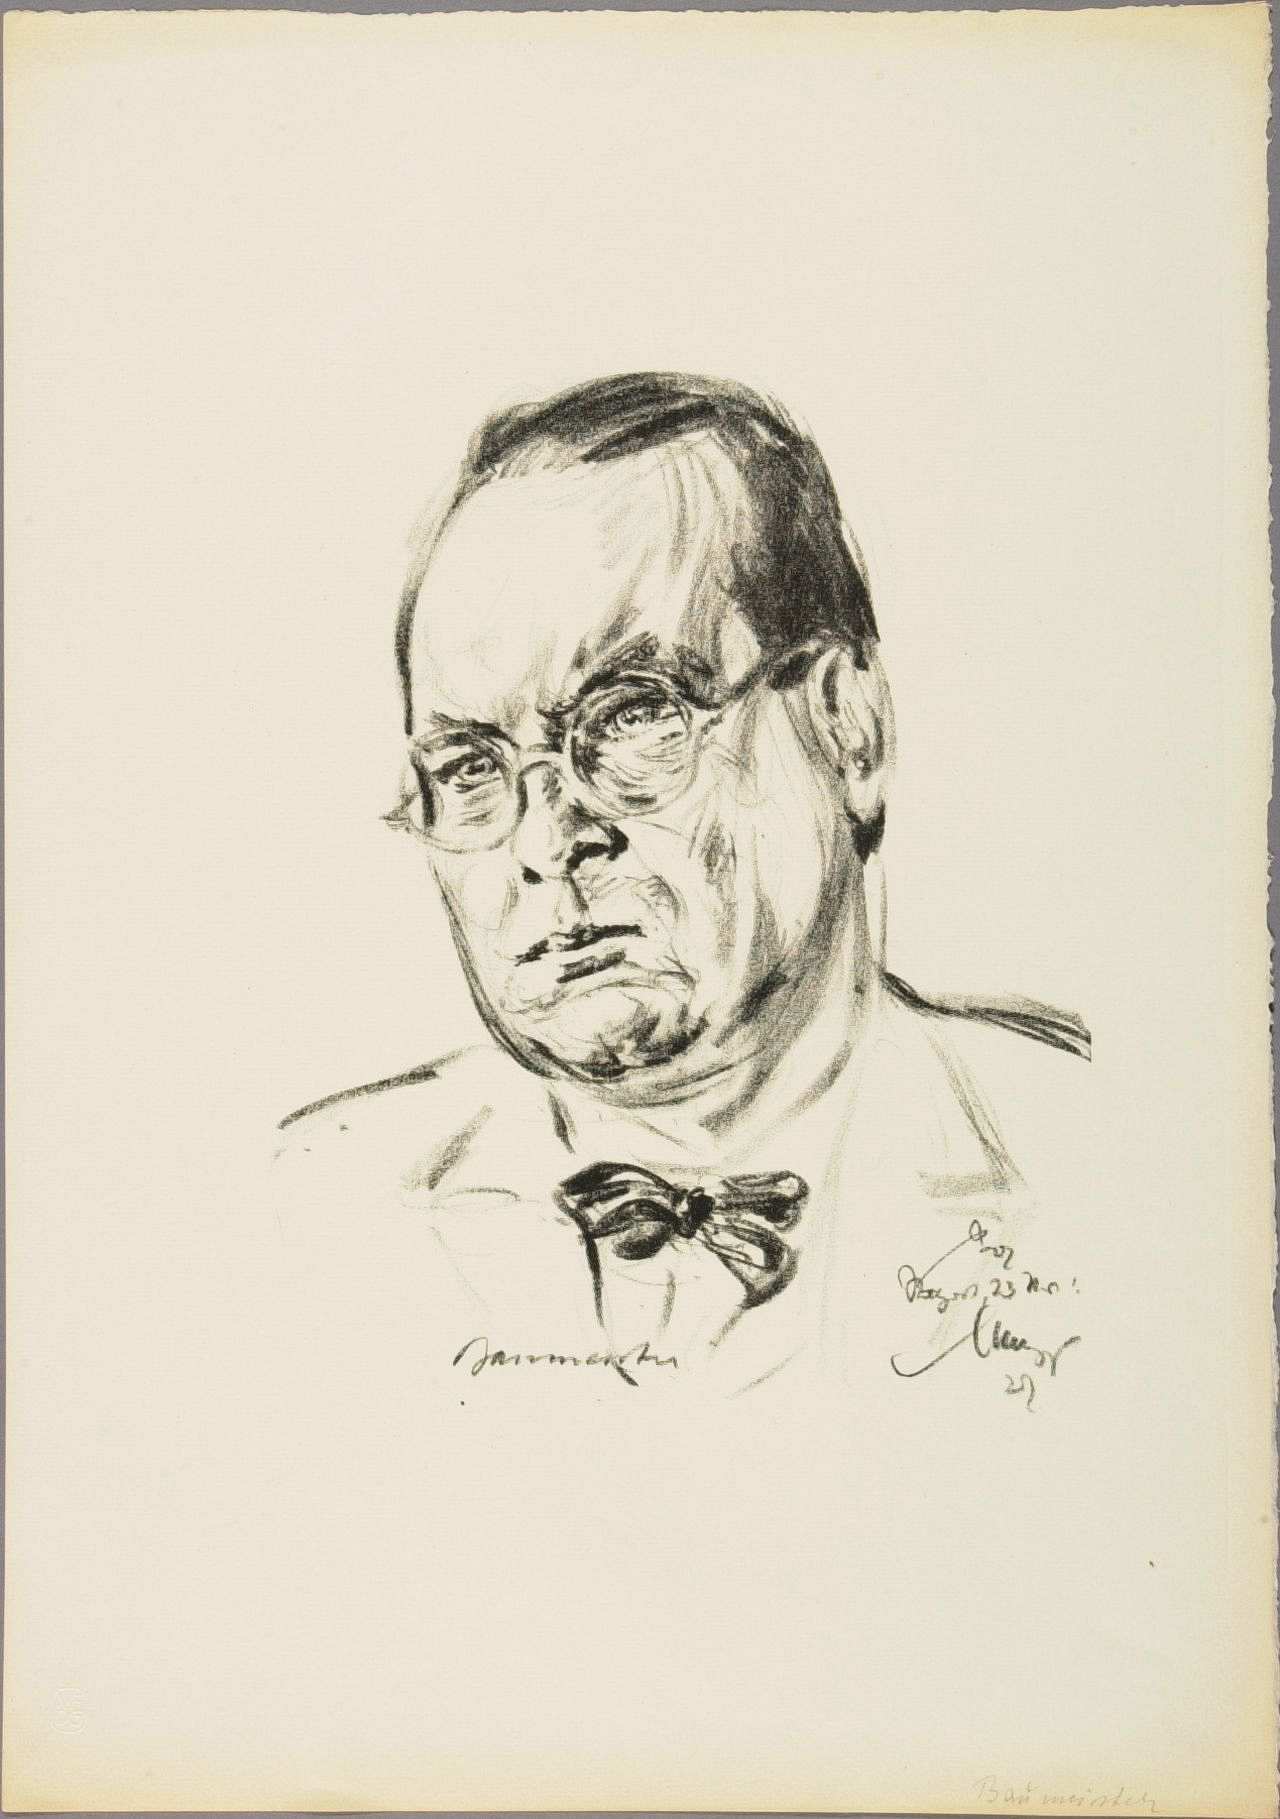 Porträtzeichnung des Malers Willi Baumeister, 1927.